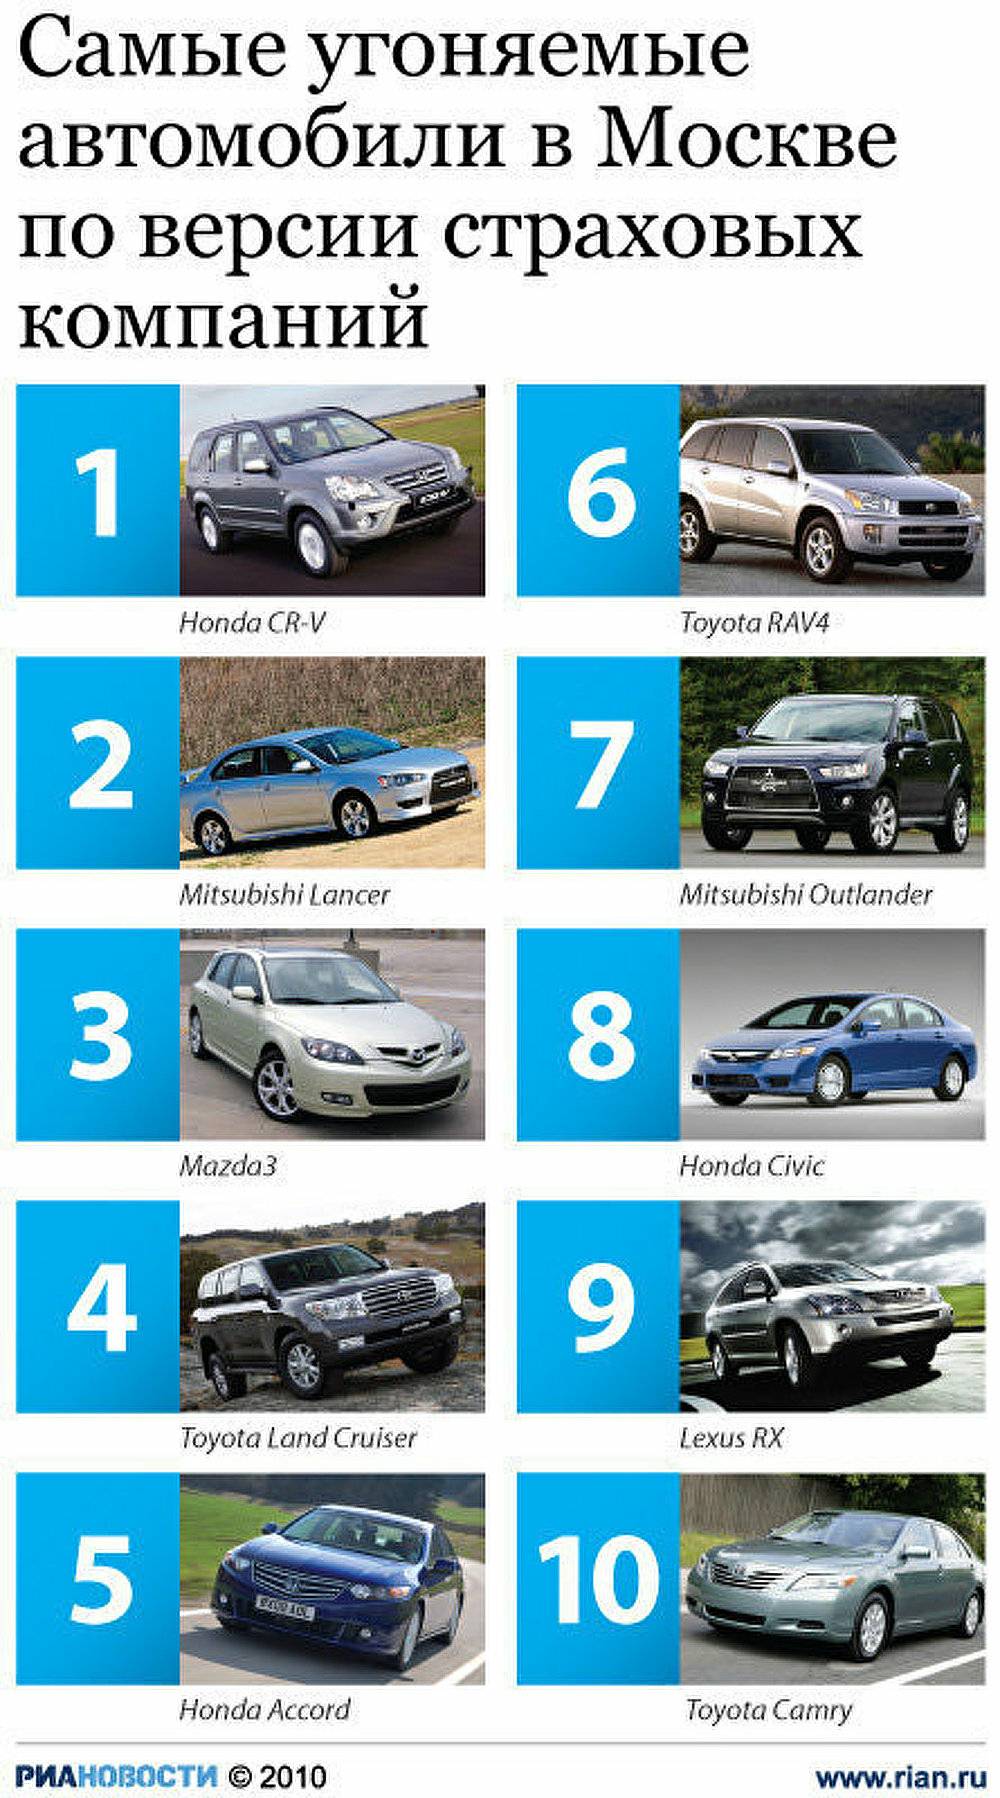 Рейтинг самых угоняемых автомобилей